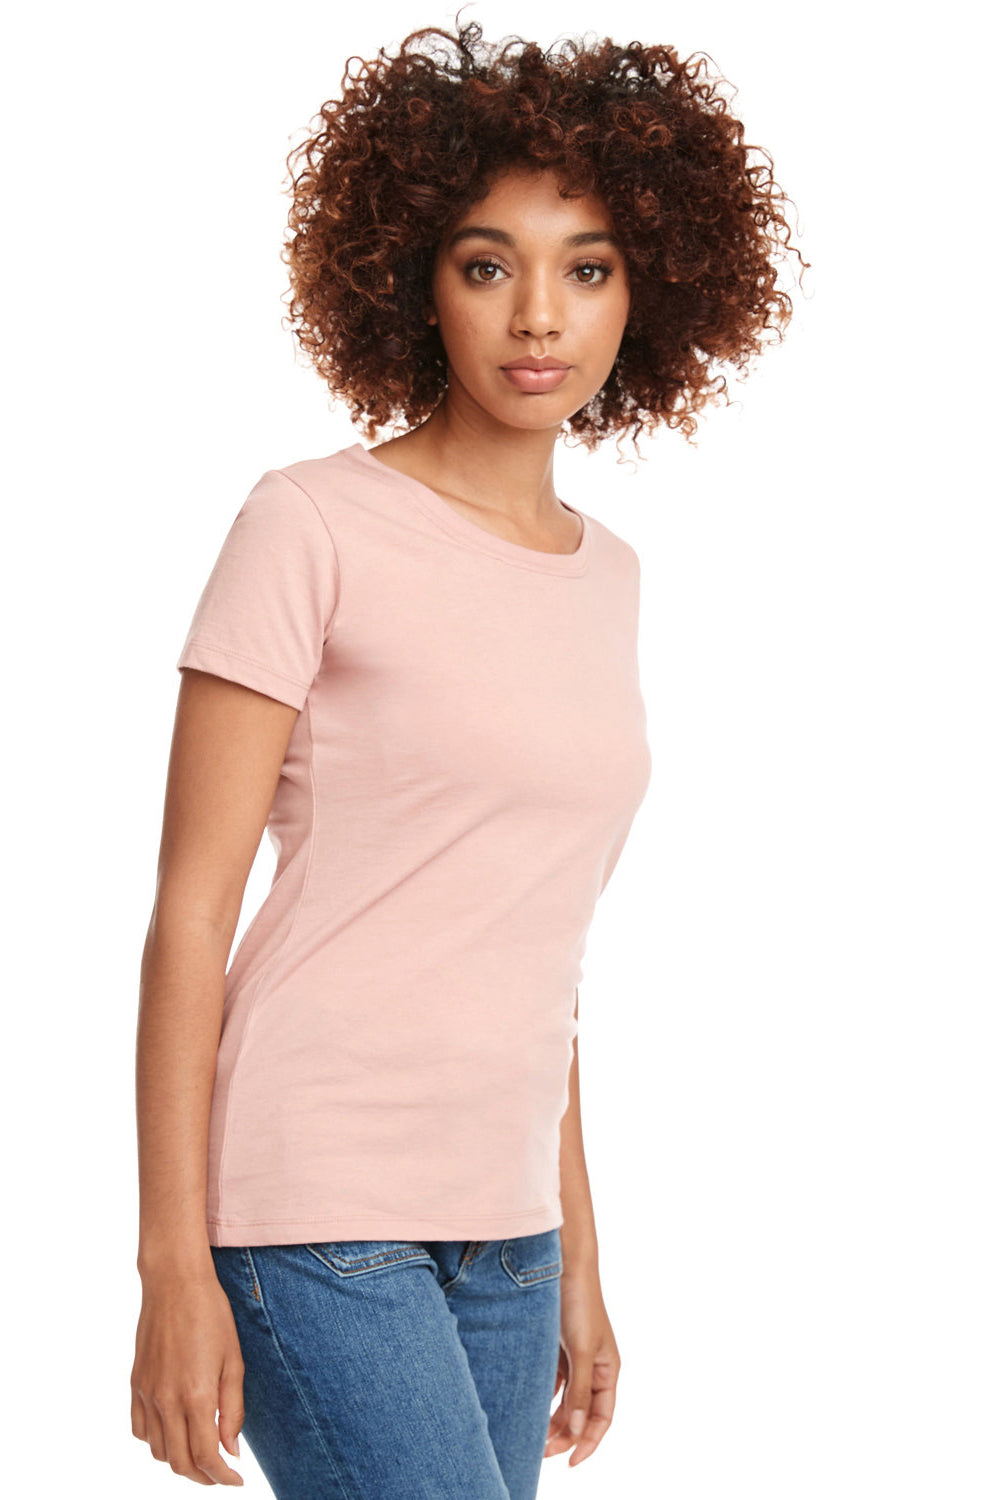 Next Level N1510/1510 Womens Ideal Jersey Short Sleeve Crewneck T-Shirt Desert Pink SIde